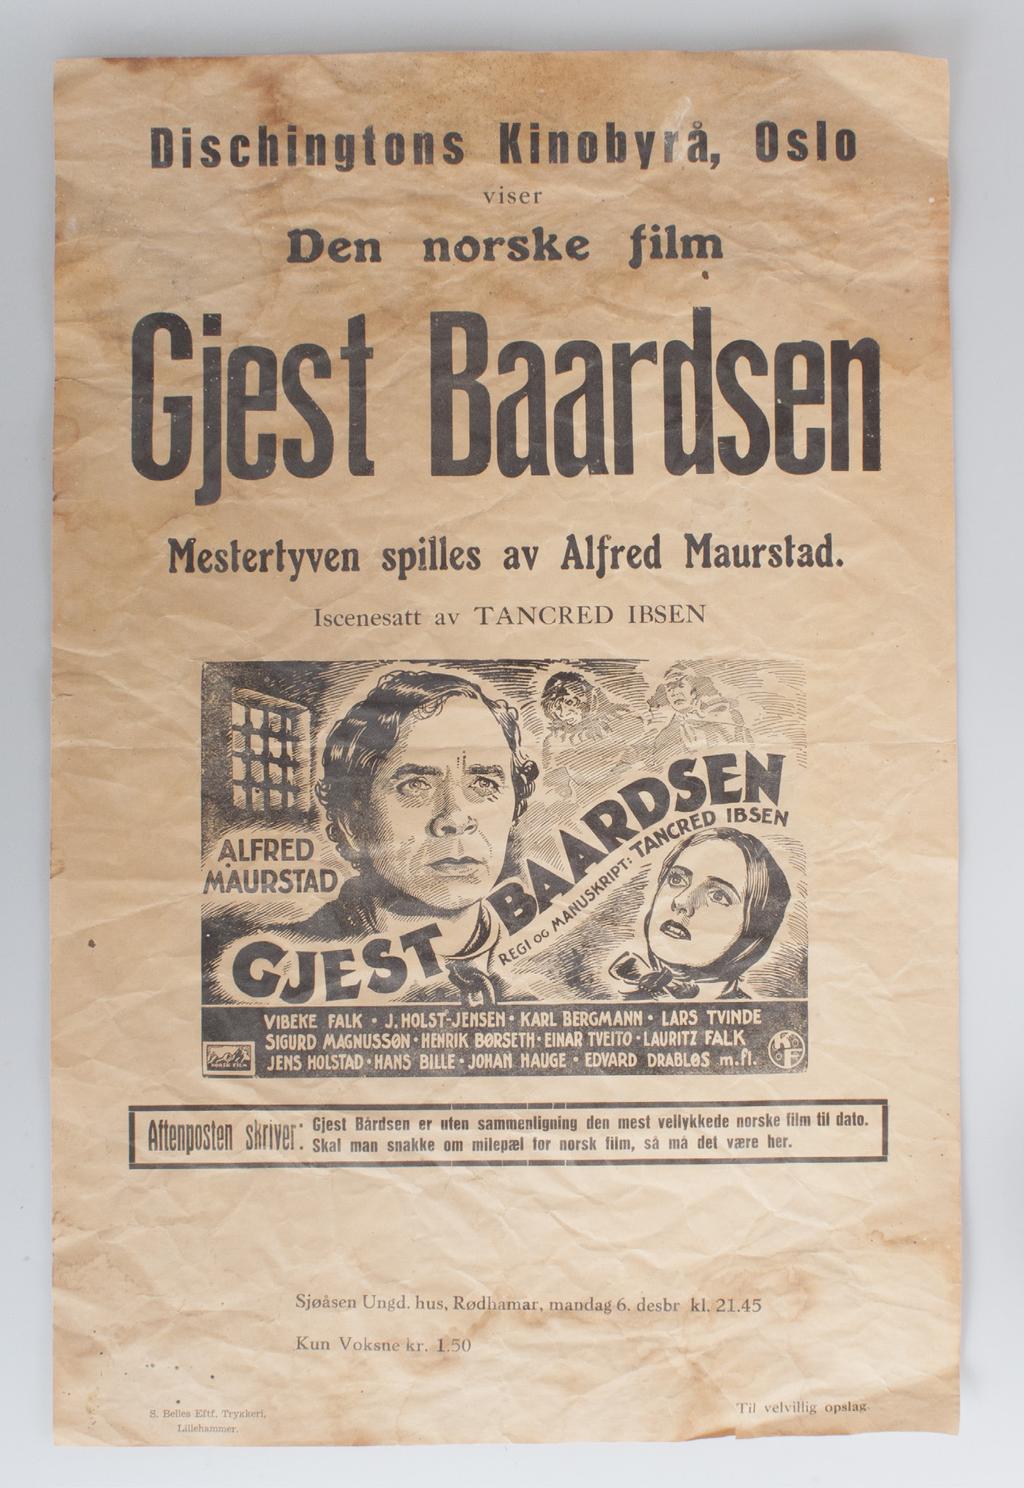 - 8 - Filmen om Gjest Baardsen Spillefilmen om Gjest Baardsen ble produsert i 1939. Regien var ved Tancred Ibsen, og hovedrolleinnehaver var Alfred Maurstad.